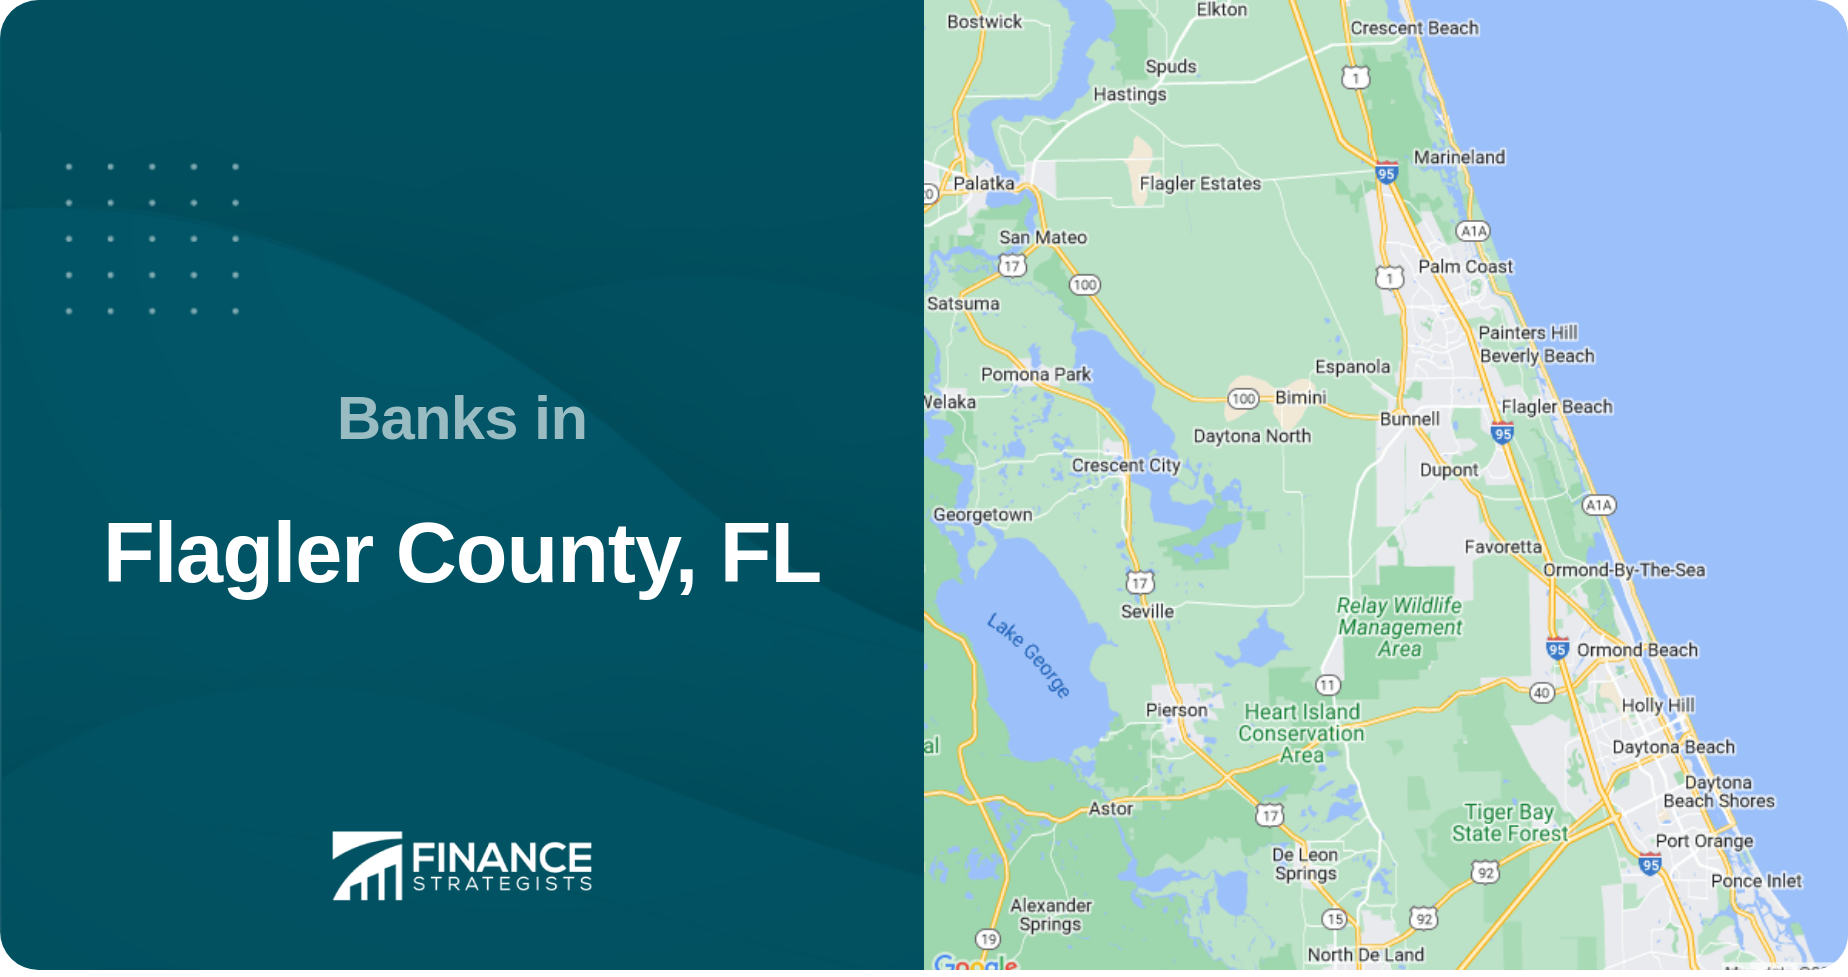 Banks in Flagler County, FL